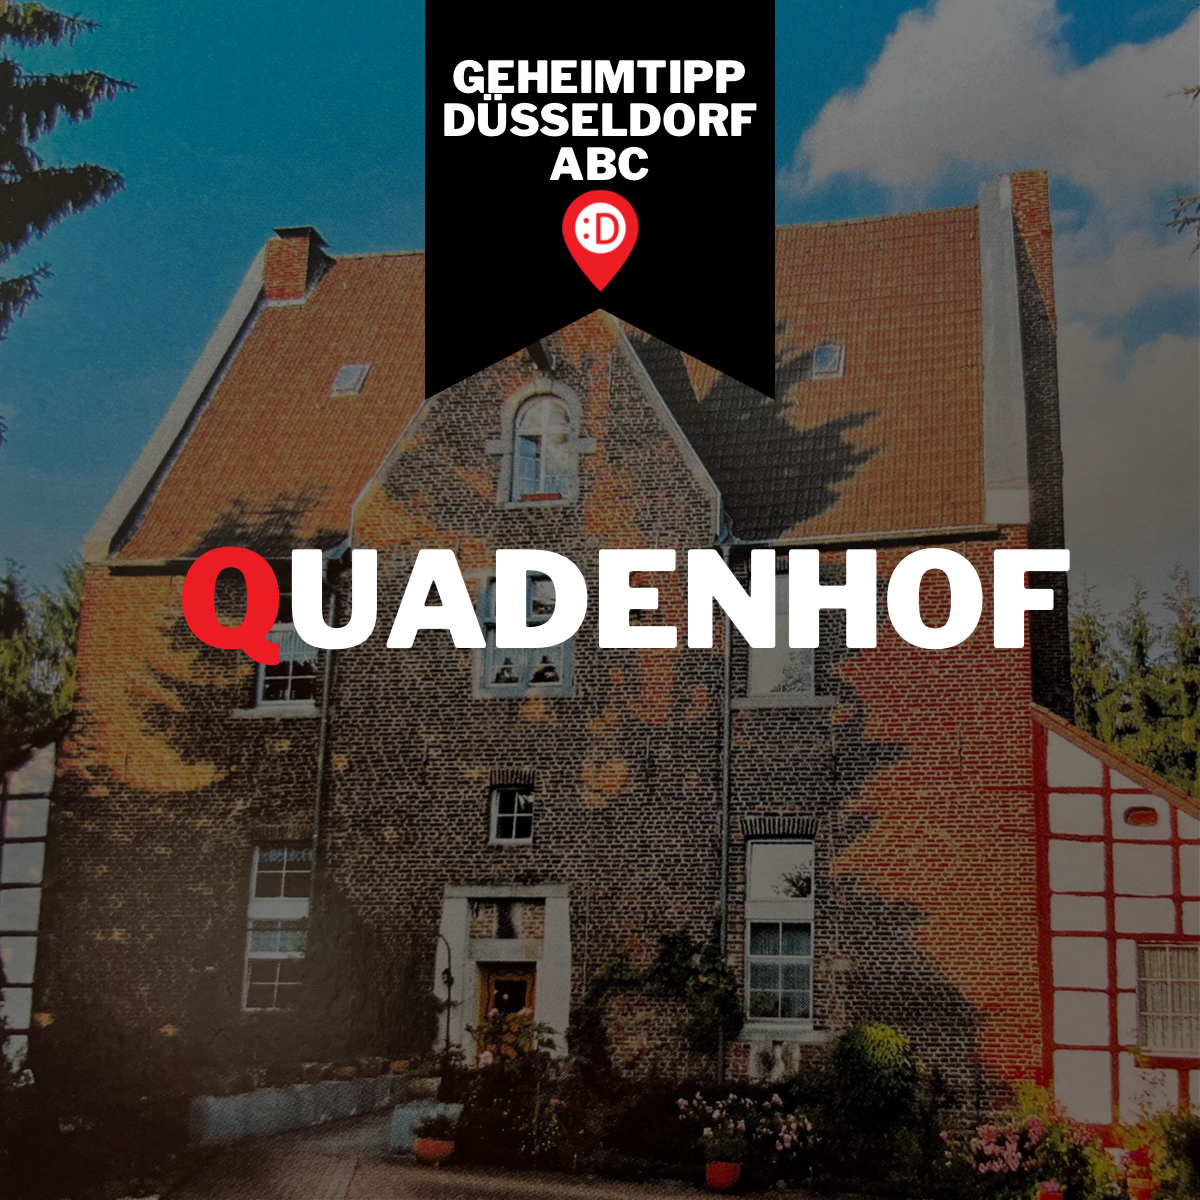 Düsseldorf ABC - Q, wie Quadenhof